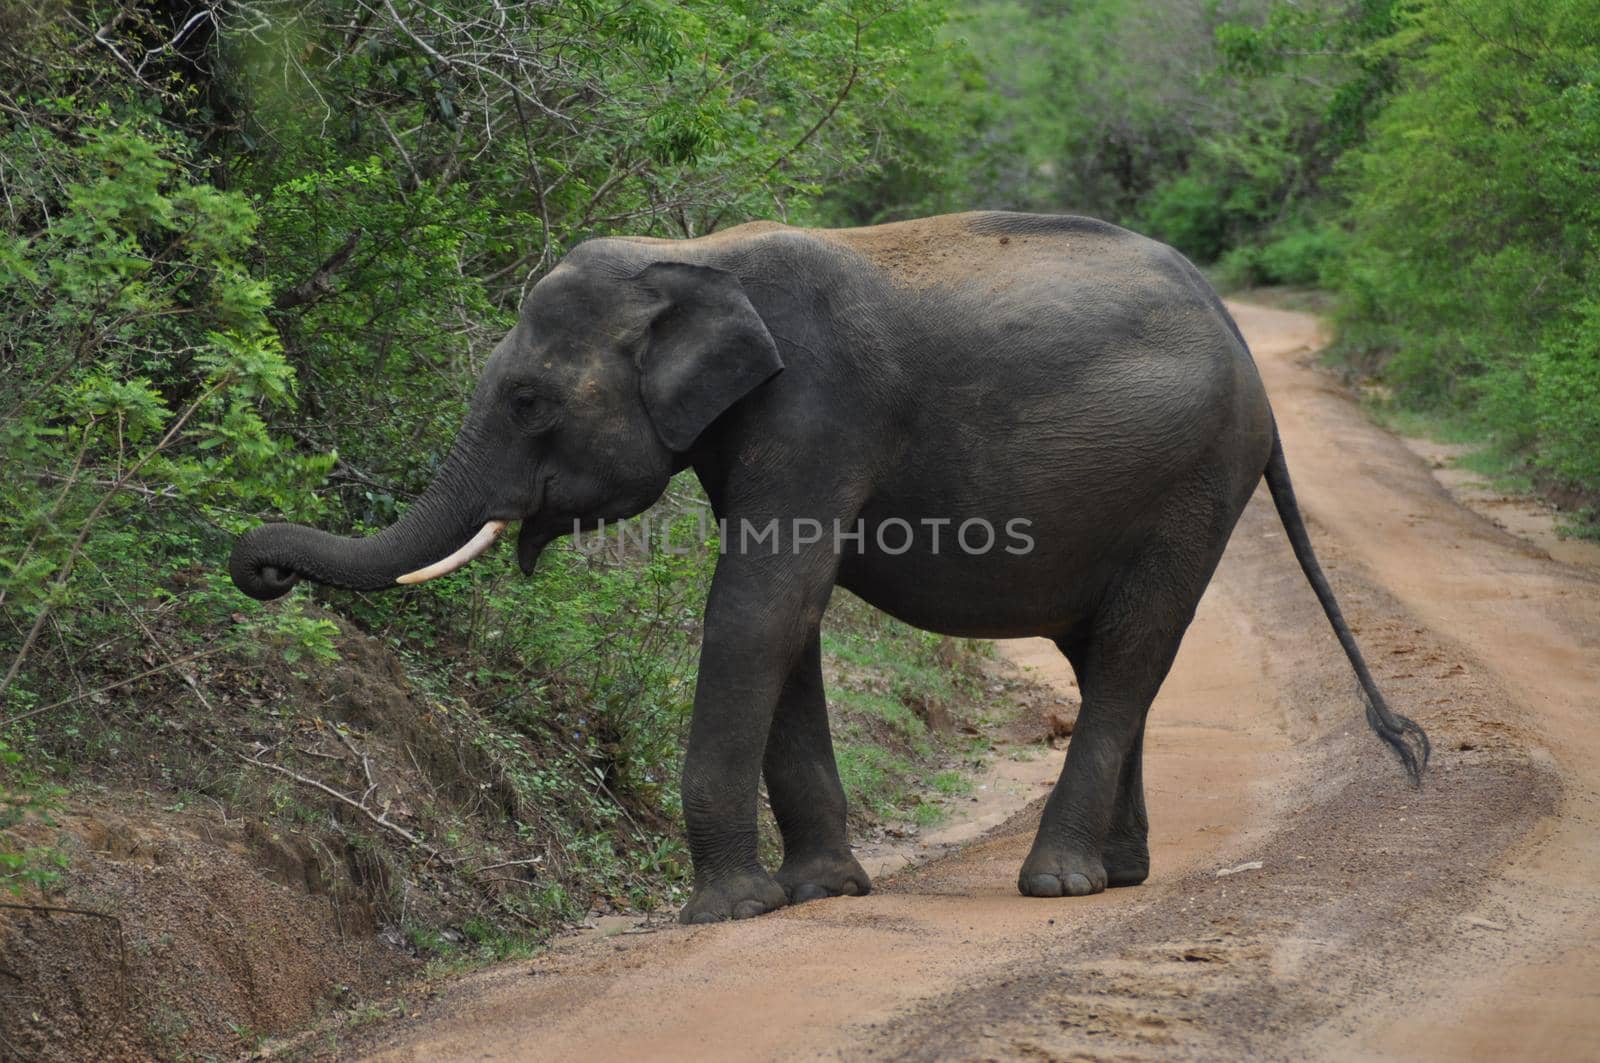 Elephant in Yala National Park, Sri Lanka by Capos